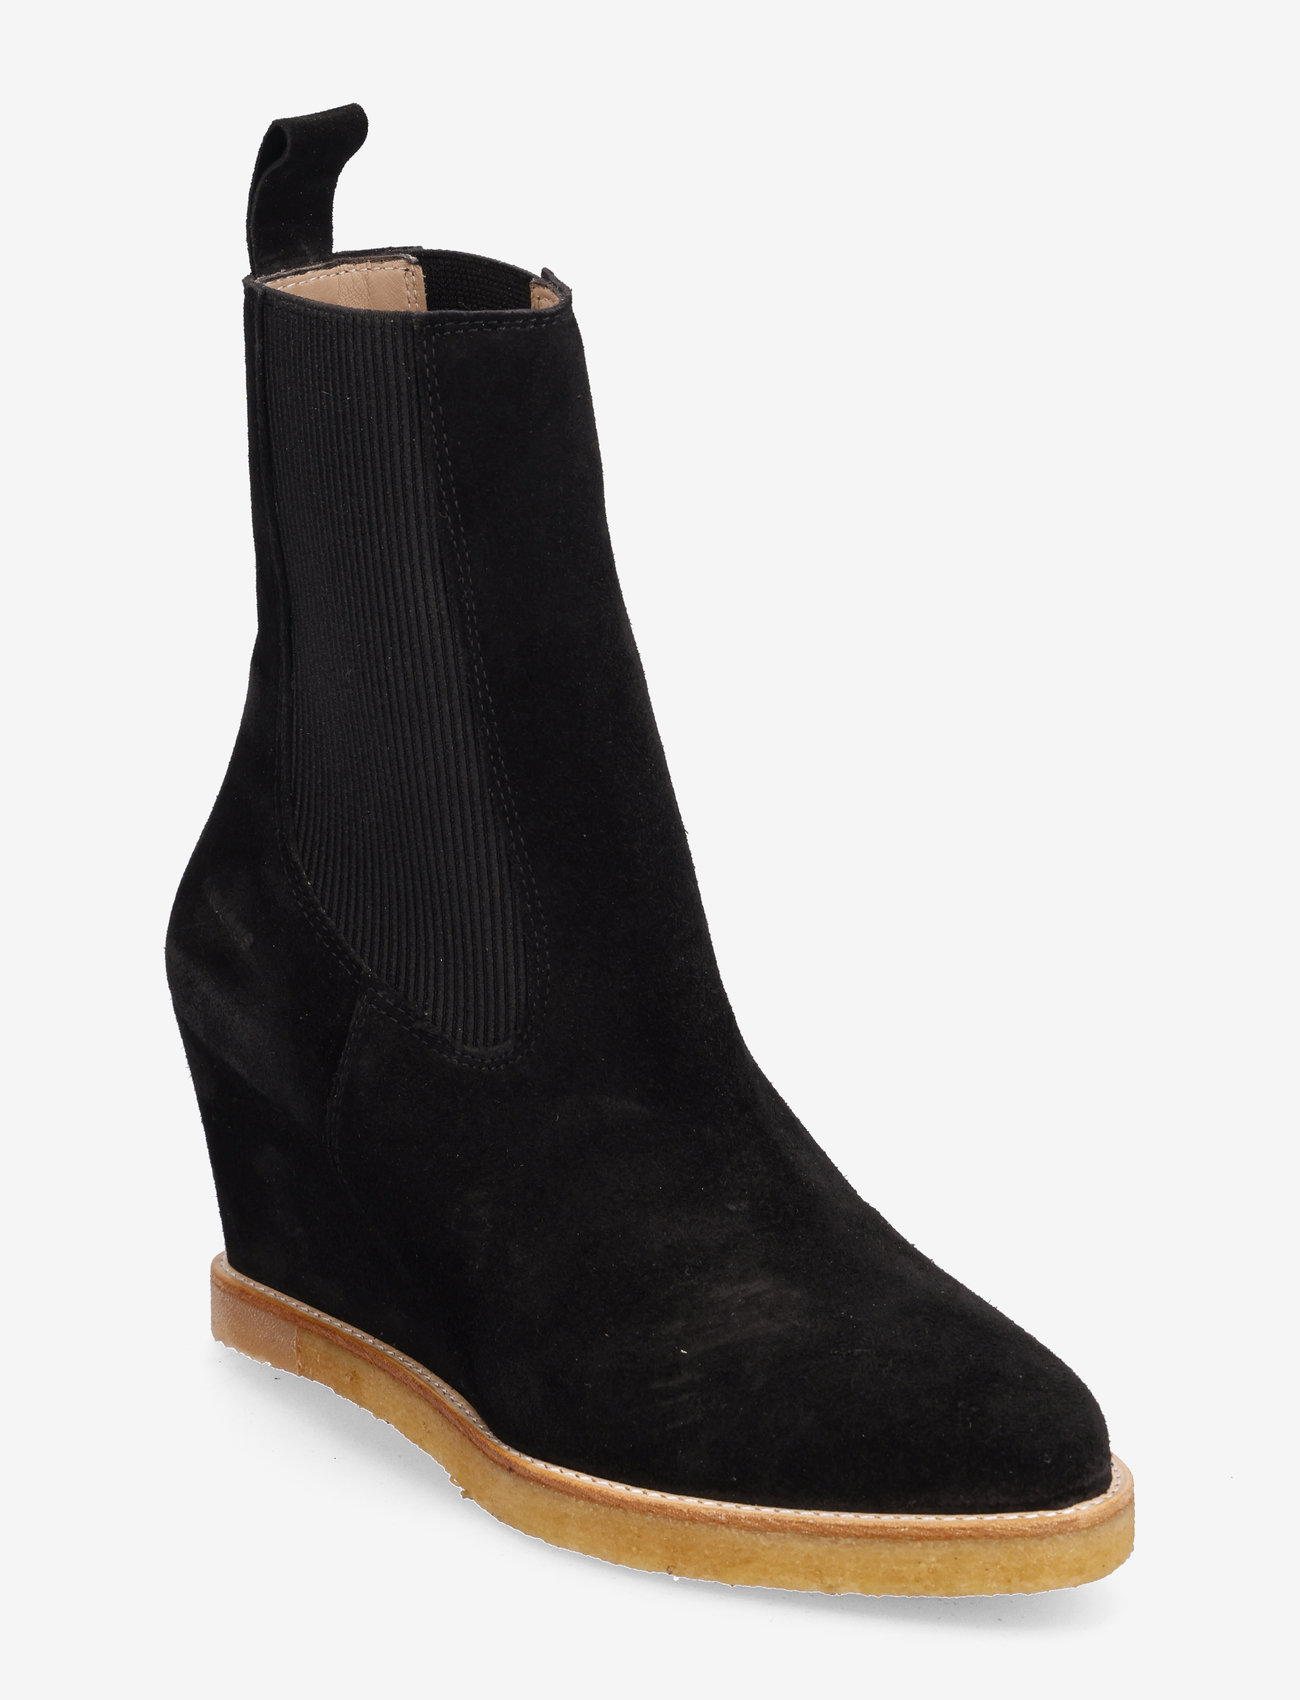 ANGULUS - Booties - Wedge - high heel - 1163/019 black/black - 0